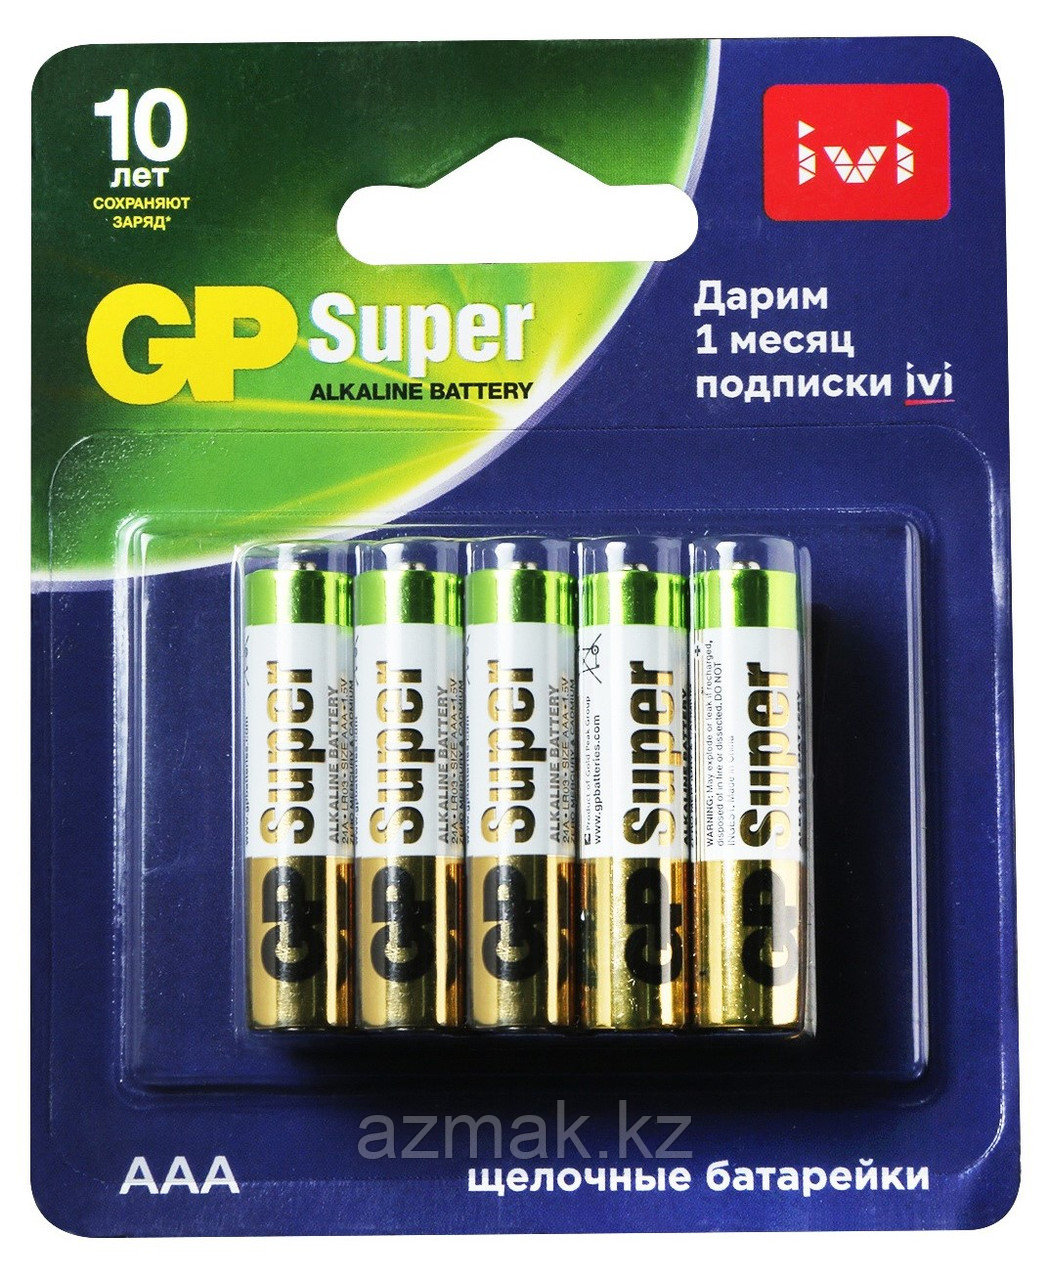 Батарейки GP SUPER Alkaline (AAA), 10 шт.